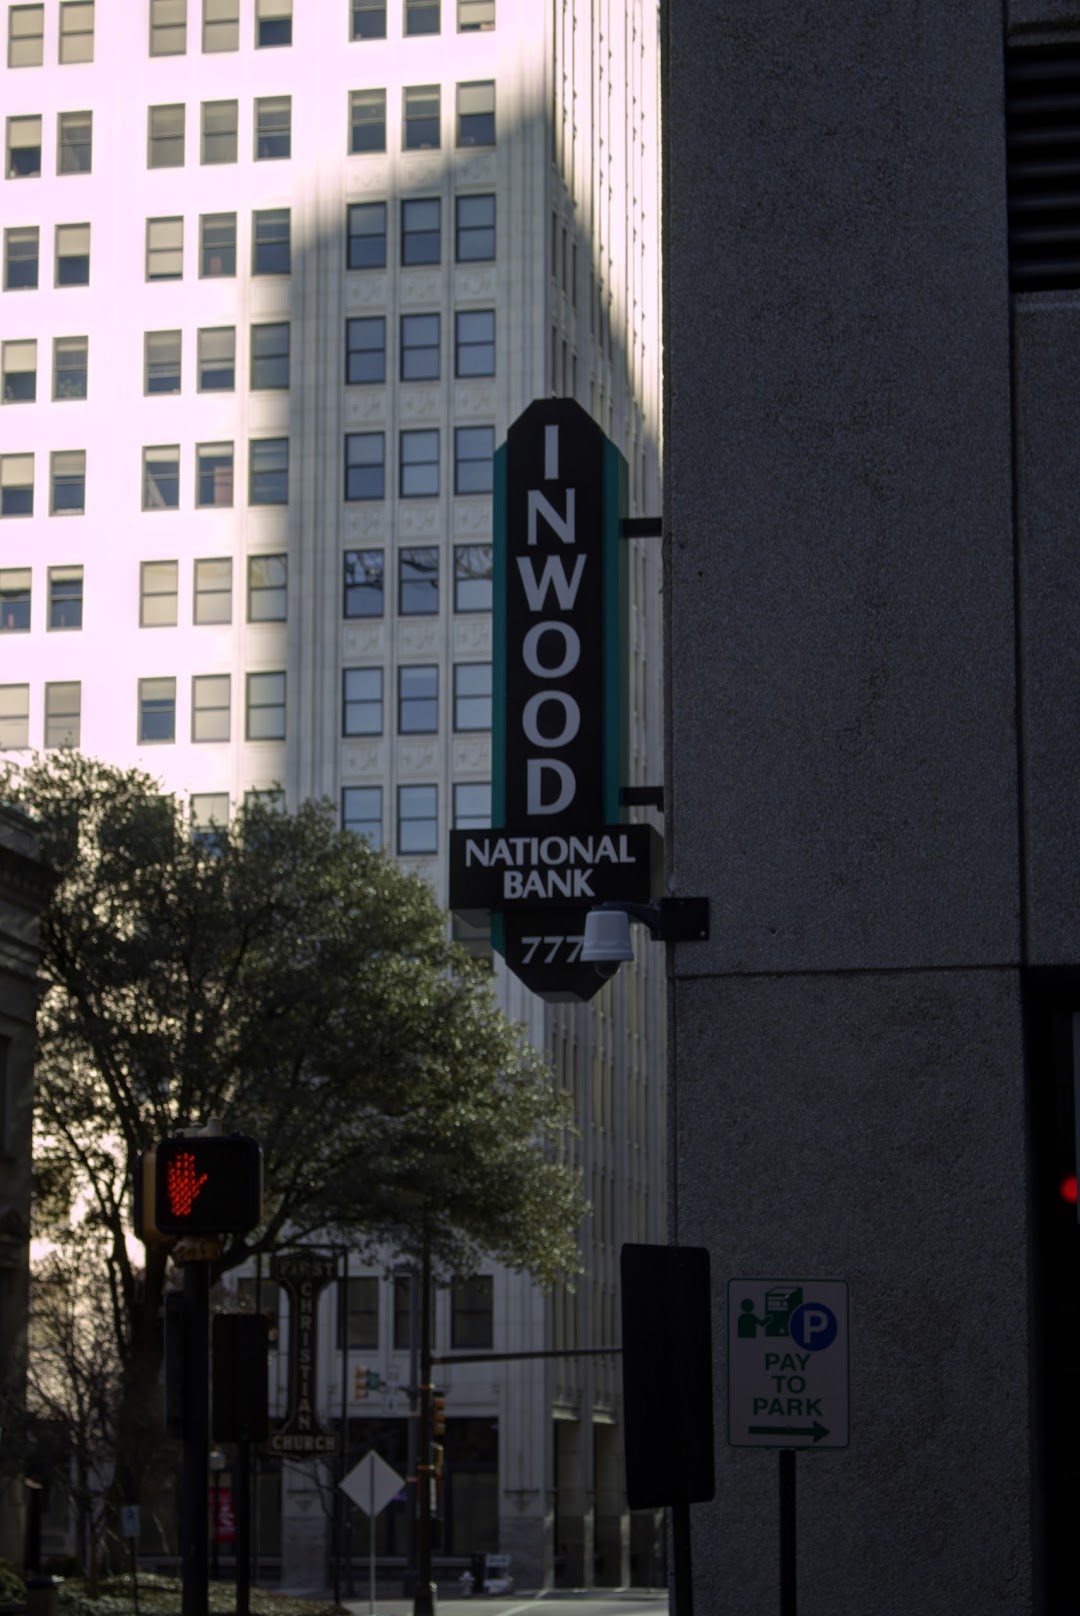 Inwood National Bank